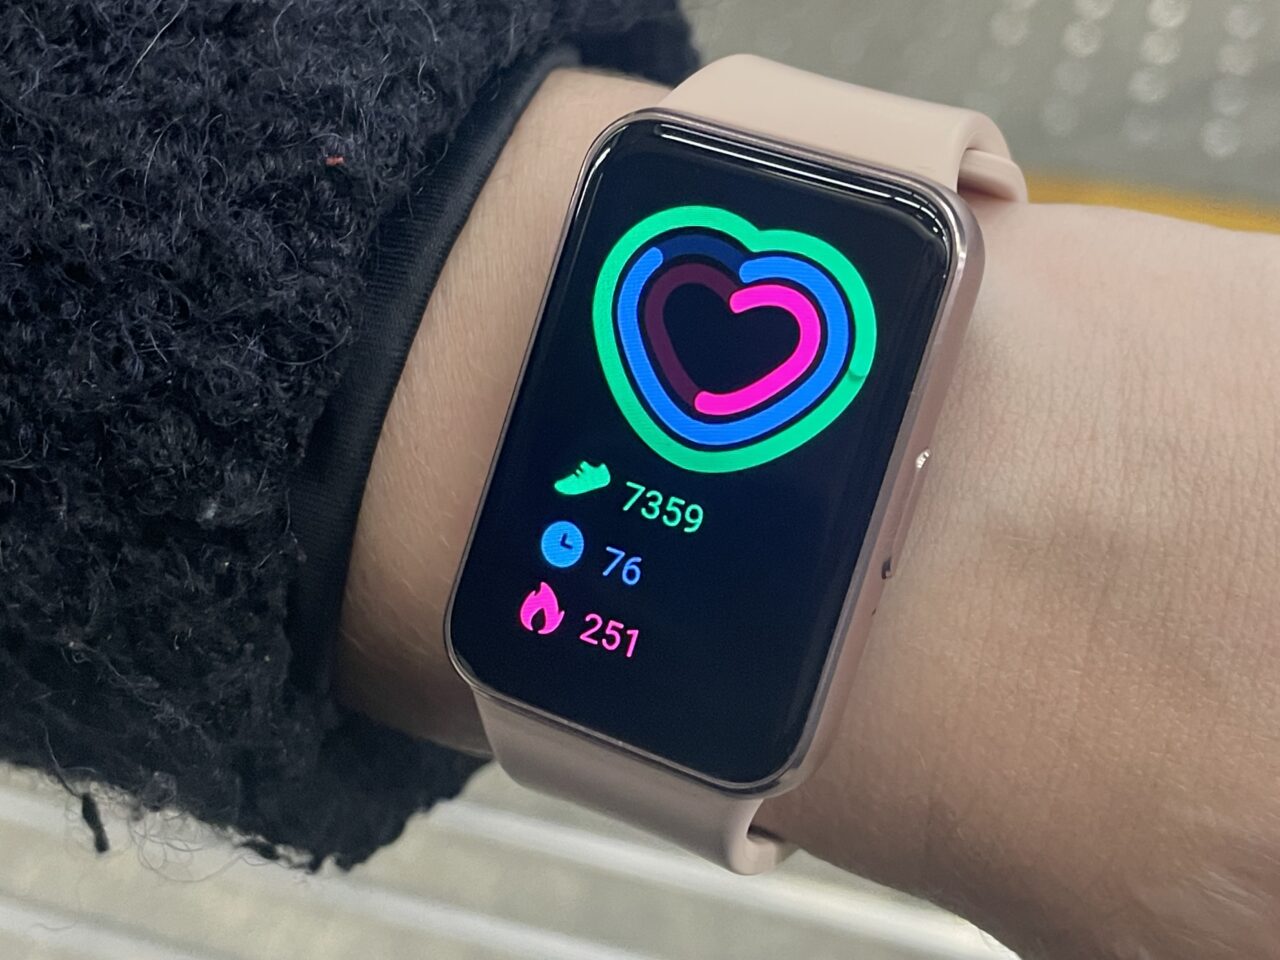 Inteligentny zegarek na nadgarstku pokazujący statystyki aktywności z kolorowym wykresem w kształcie serca.